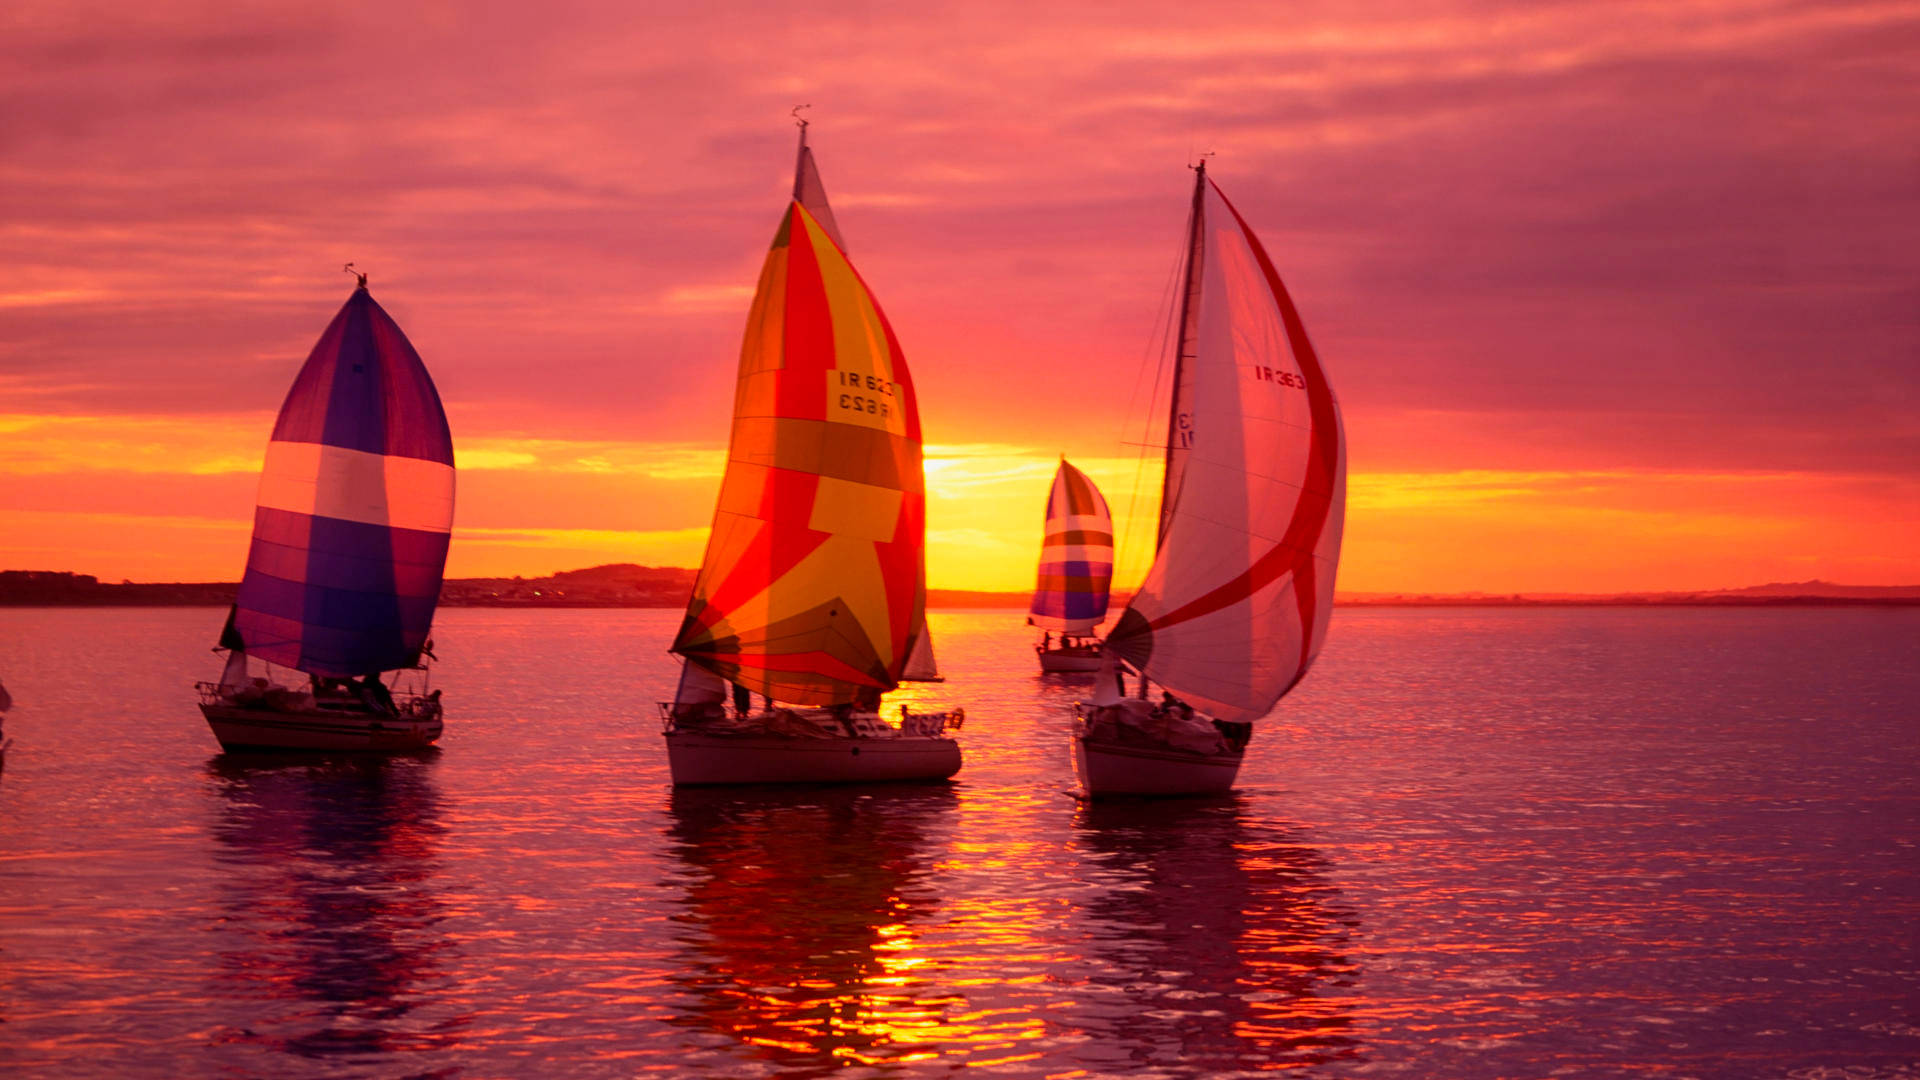 Sailing Sailboats With Colorful Sails Wallpaper